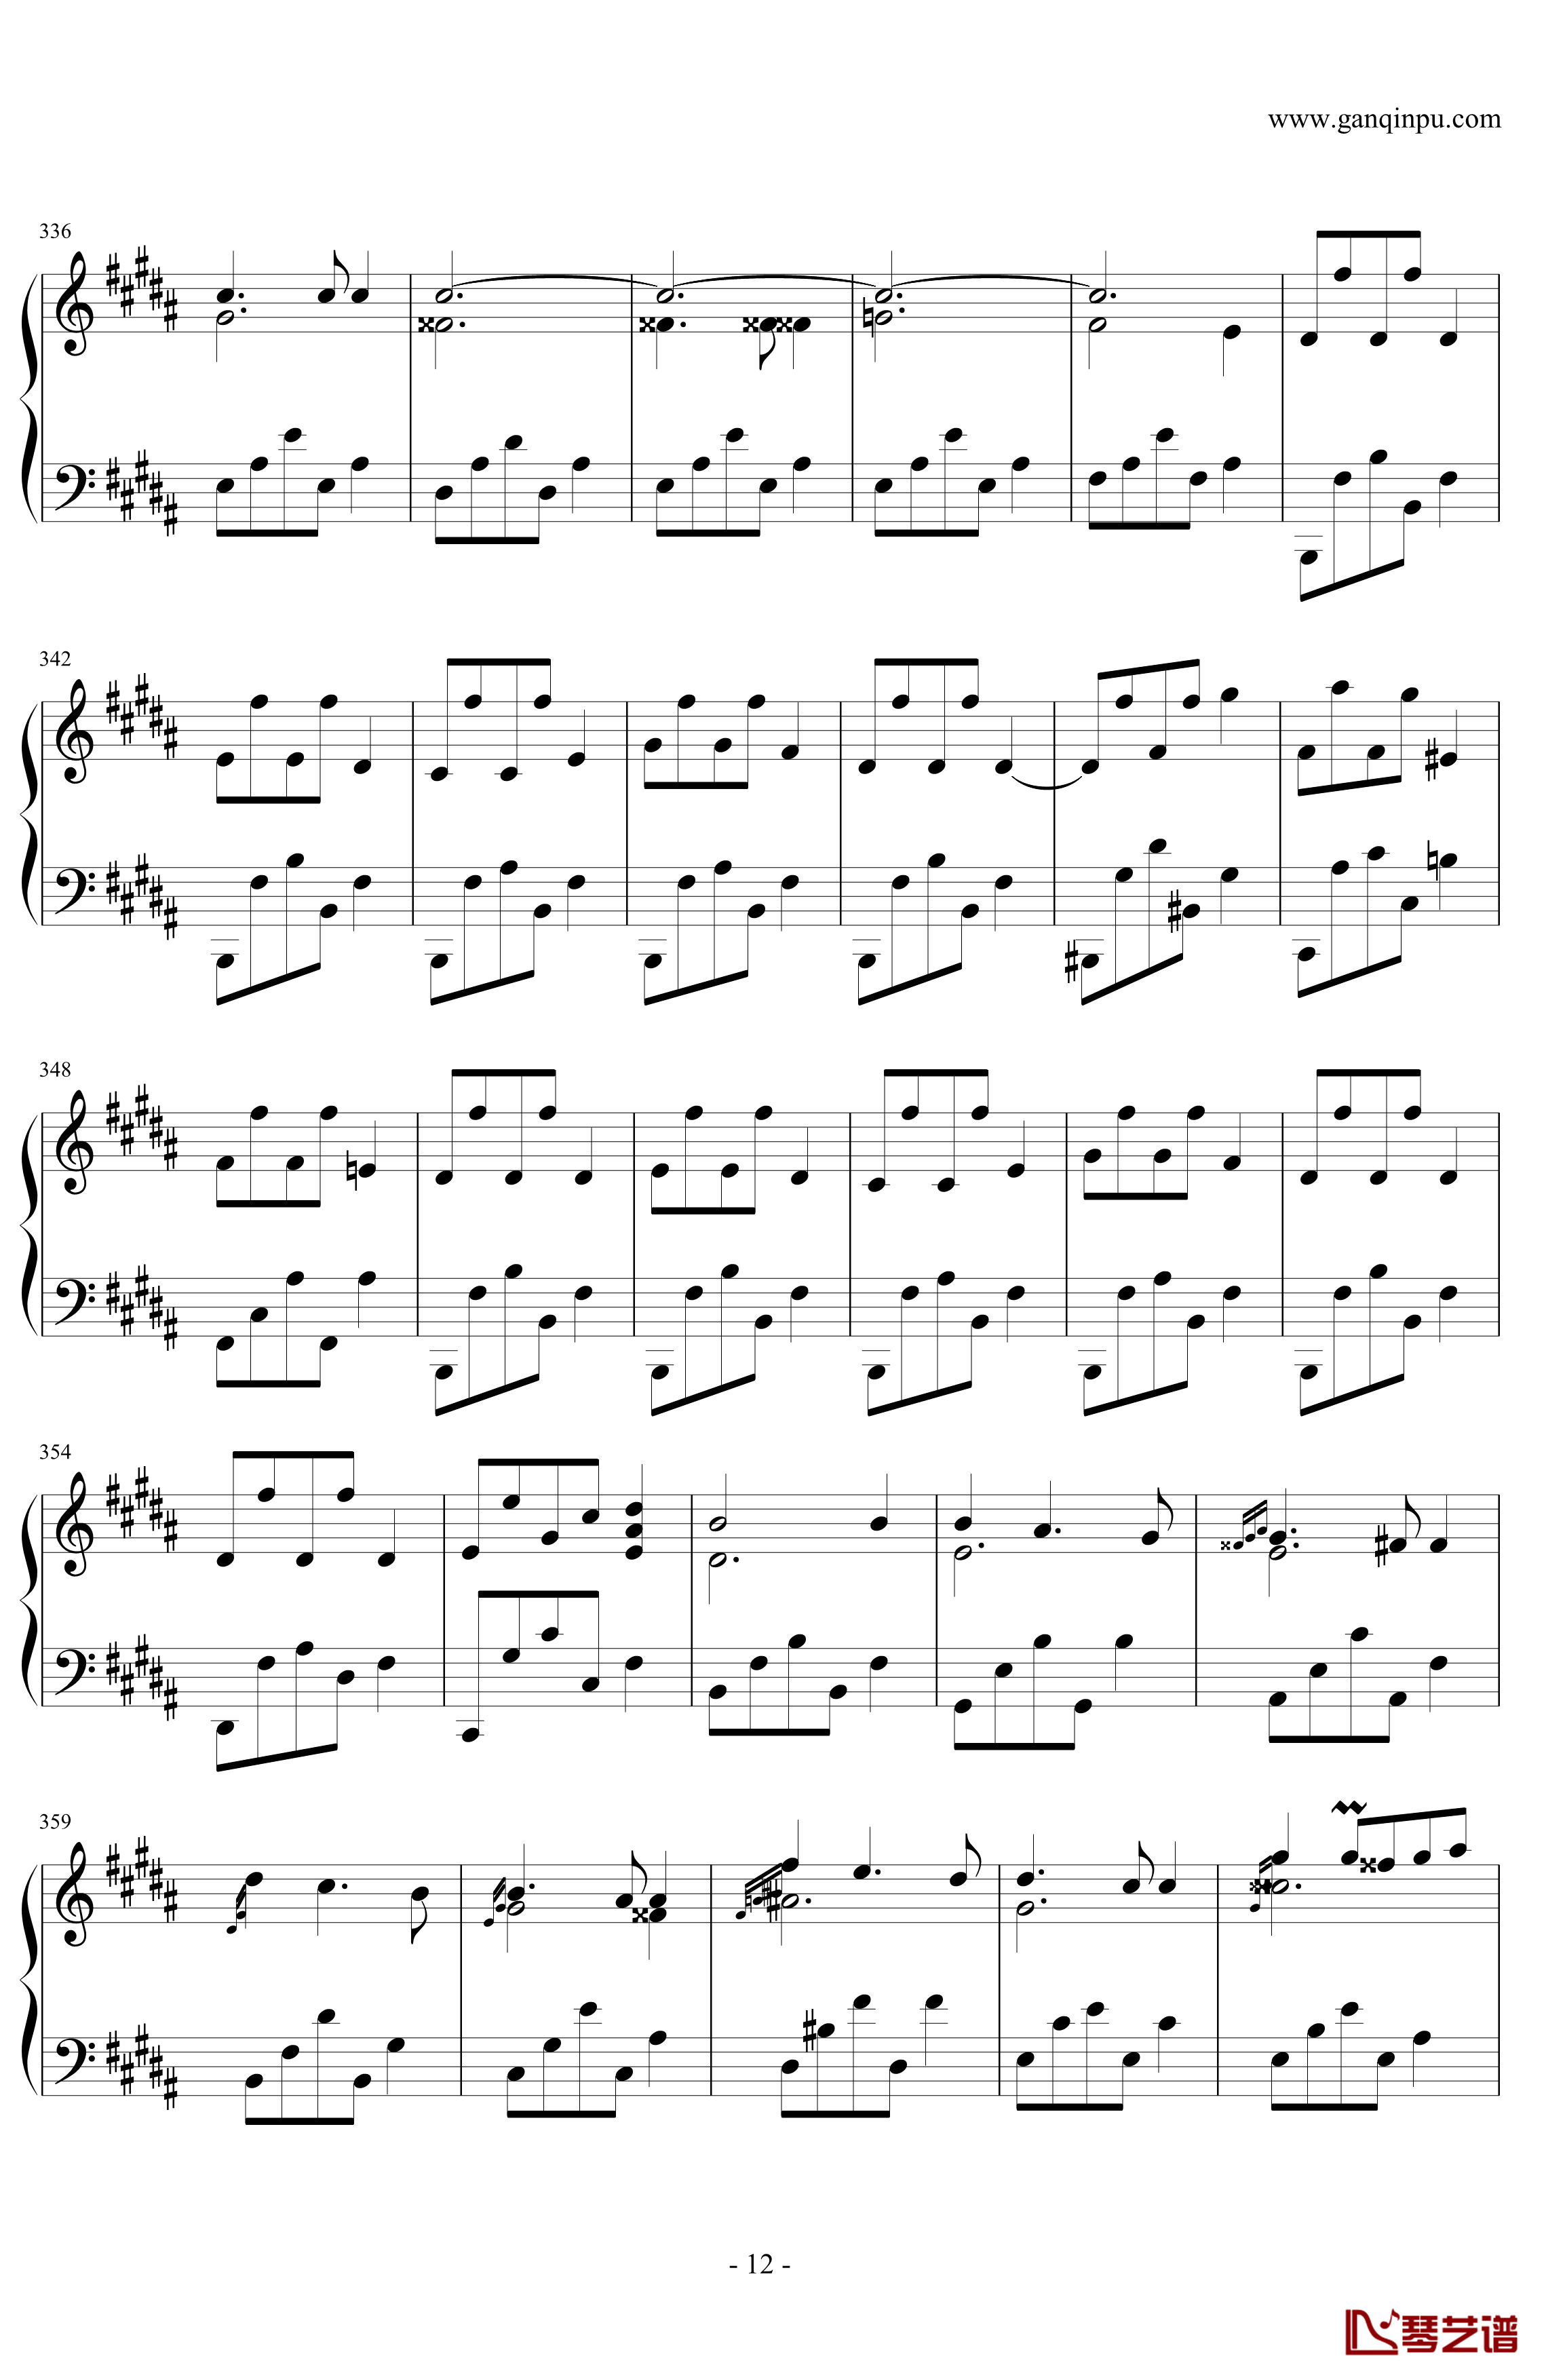 肖邦第一谐谑曲钢琴谱-肖邦-chopin12